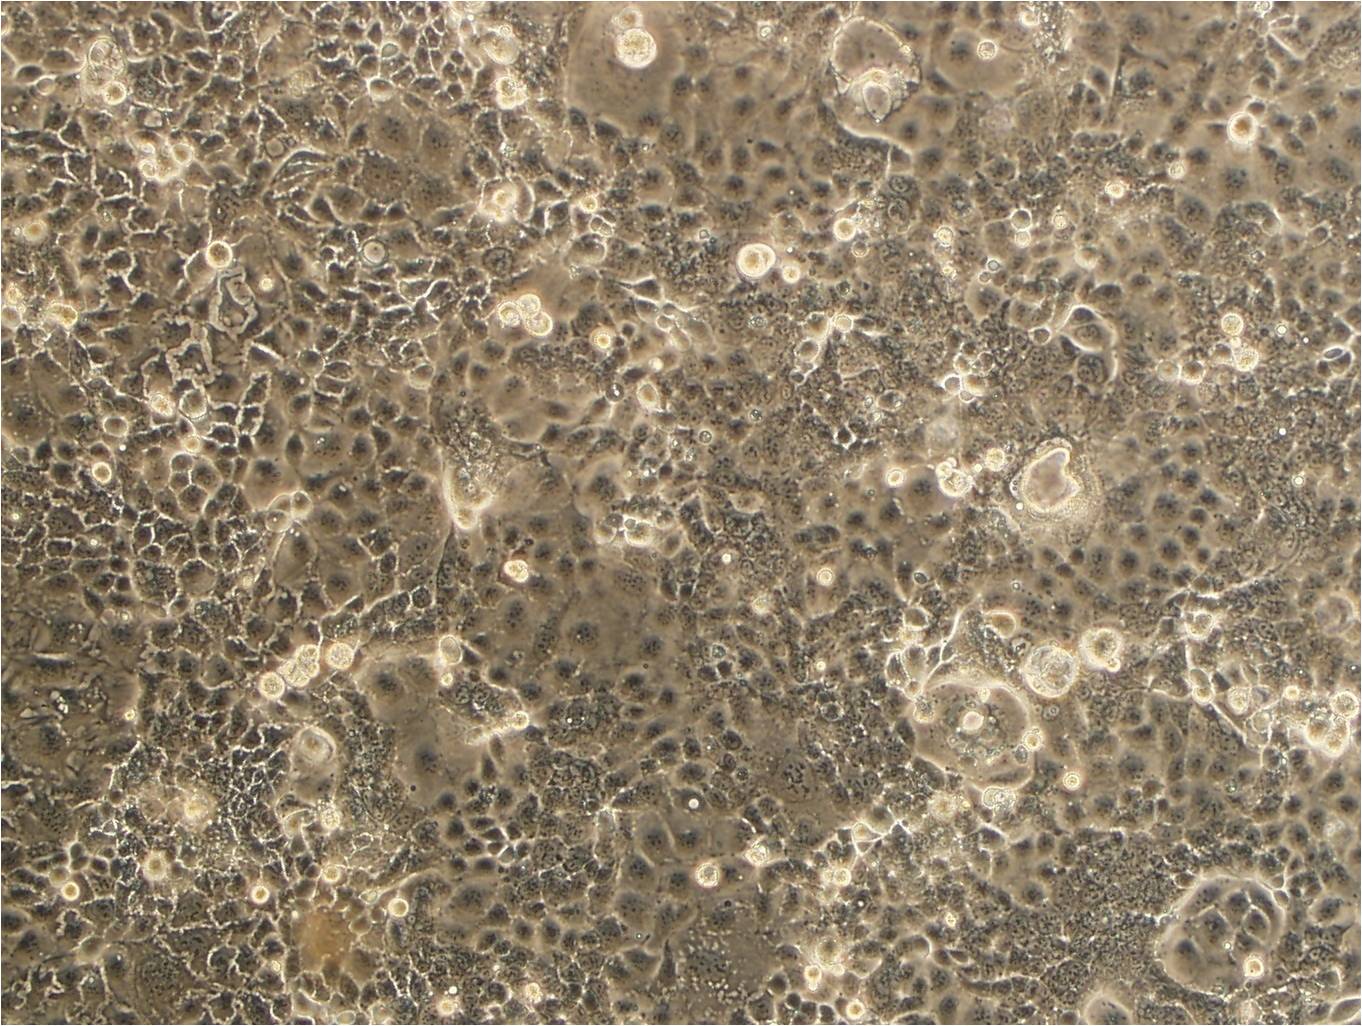 NCI-N87 epithelioid cells人胃癌细胞系,NCI-N87 epithelioid cells